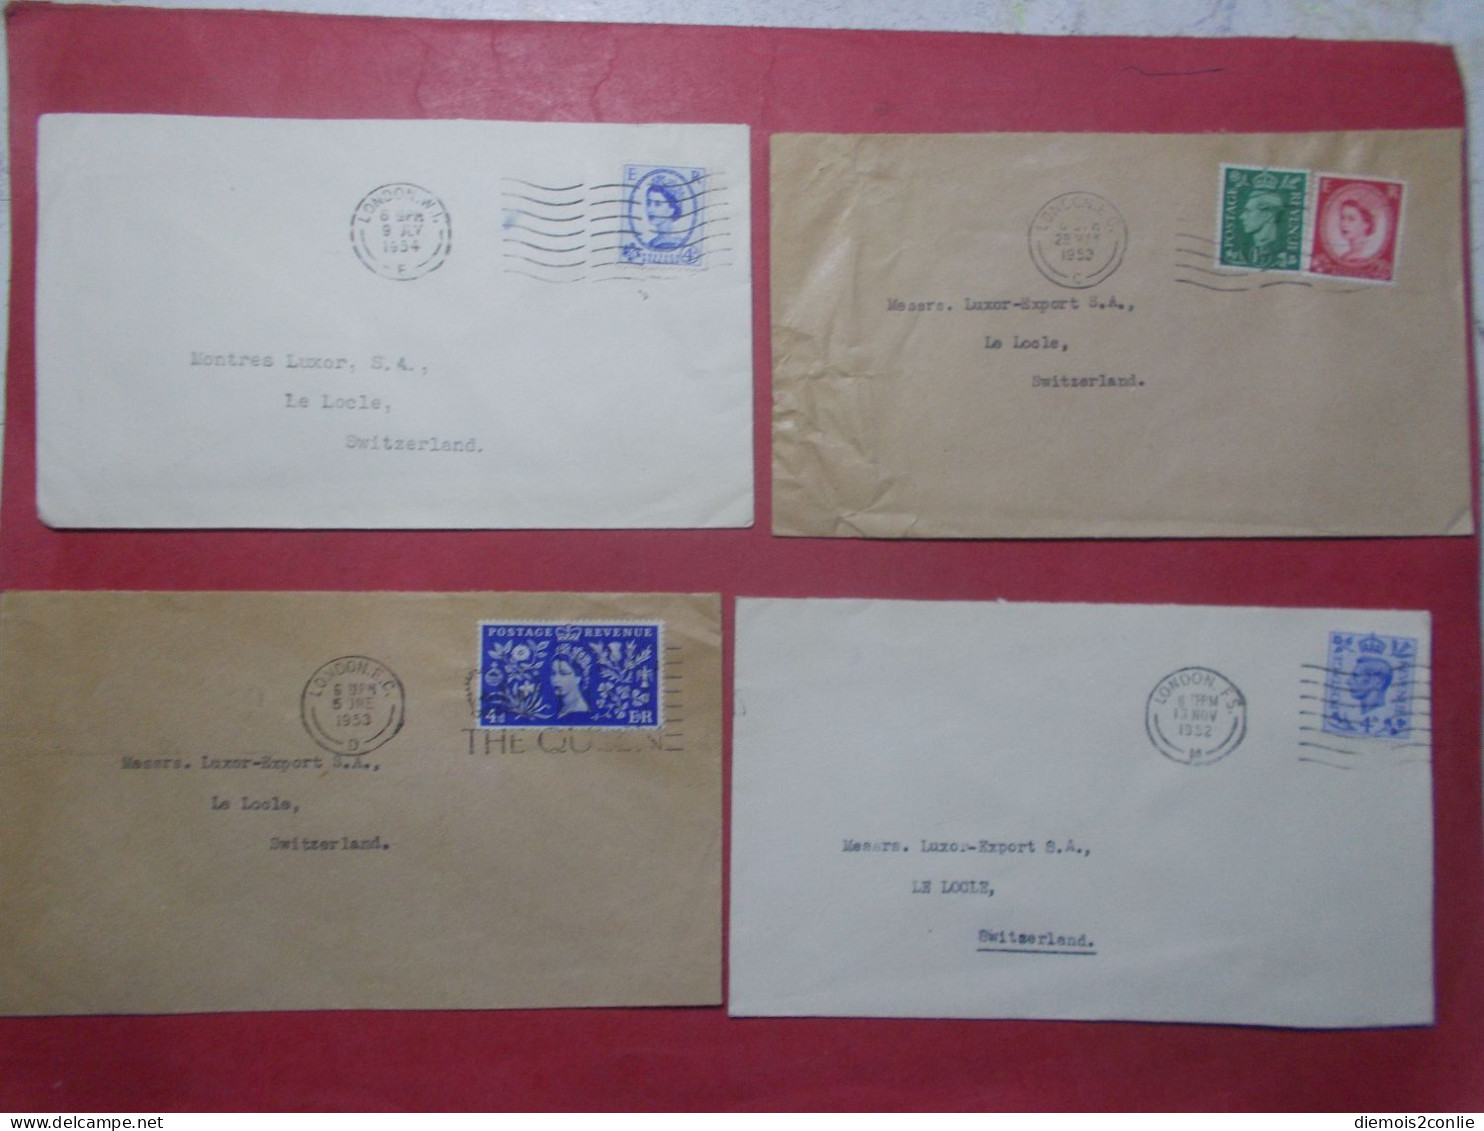 Marcophilie - Lot 4 Lettres Enveloppes Oblitérations Timbres ROYAUME UNI Destination SUISSE (B334) - Poststempel